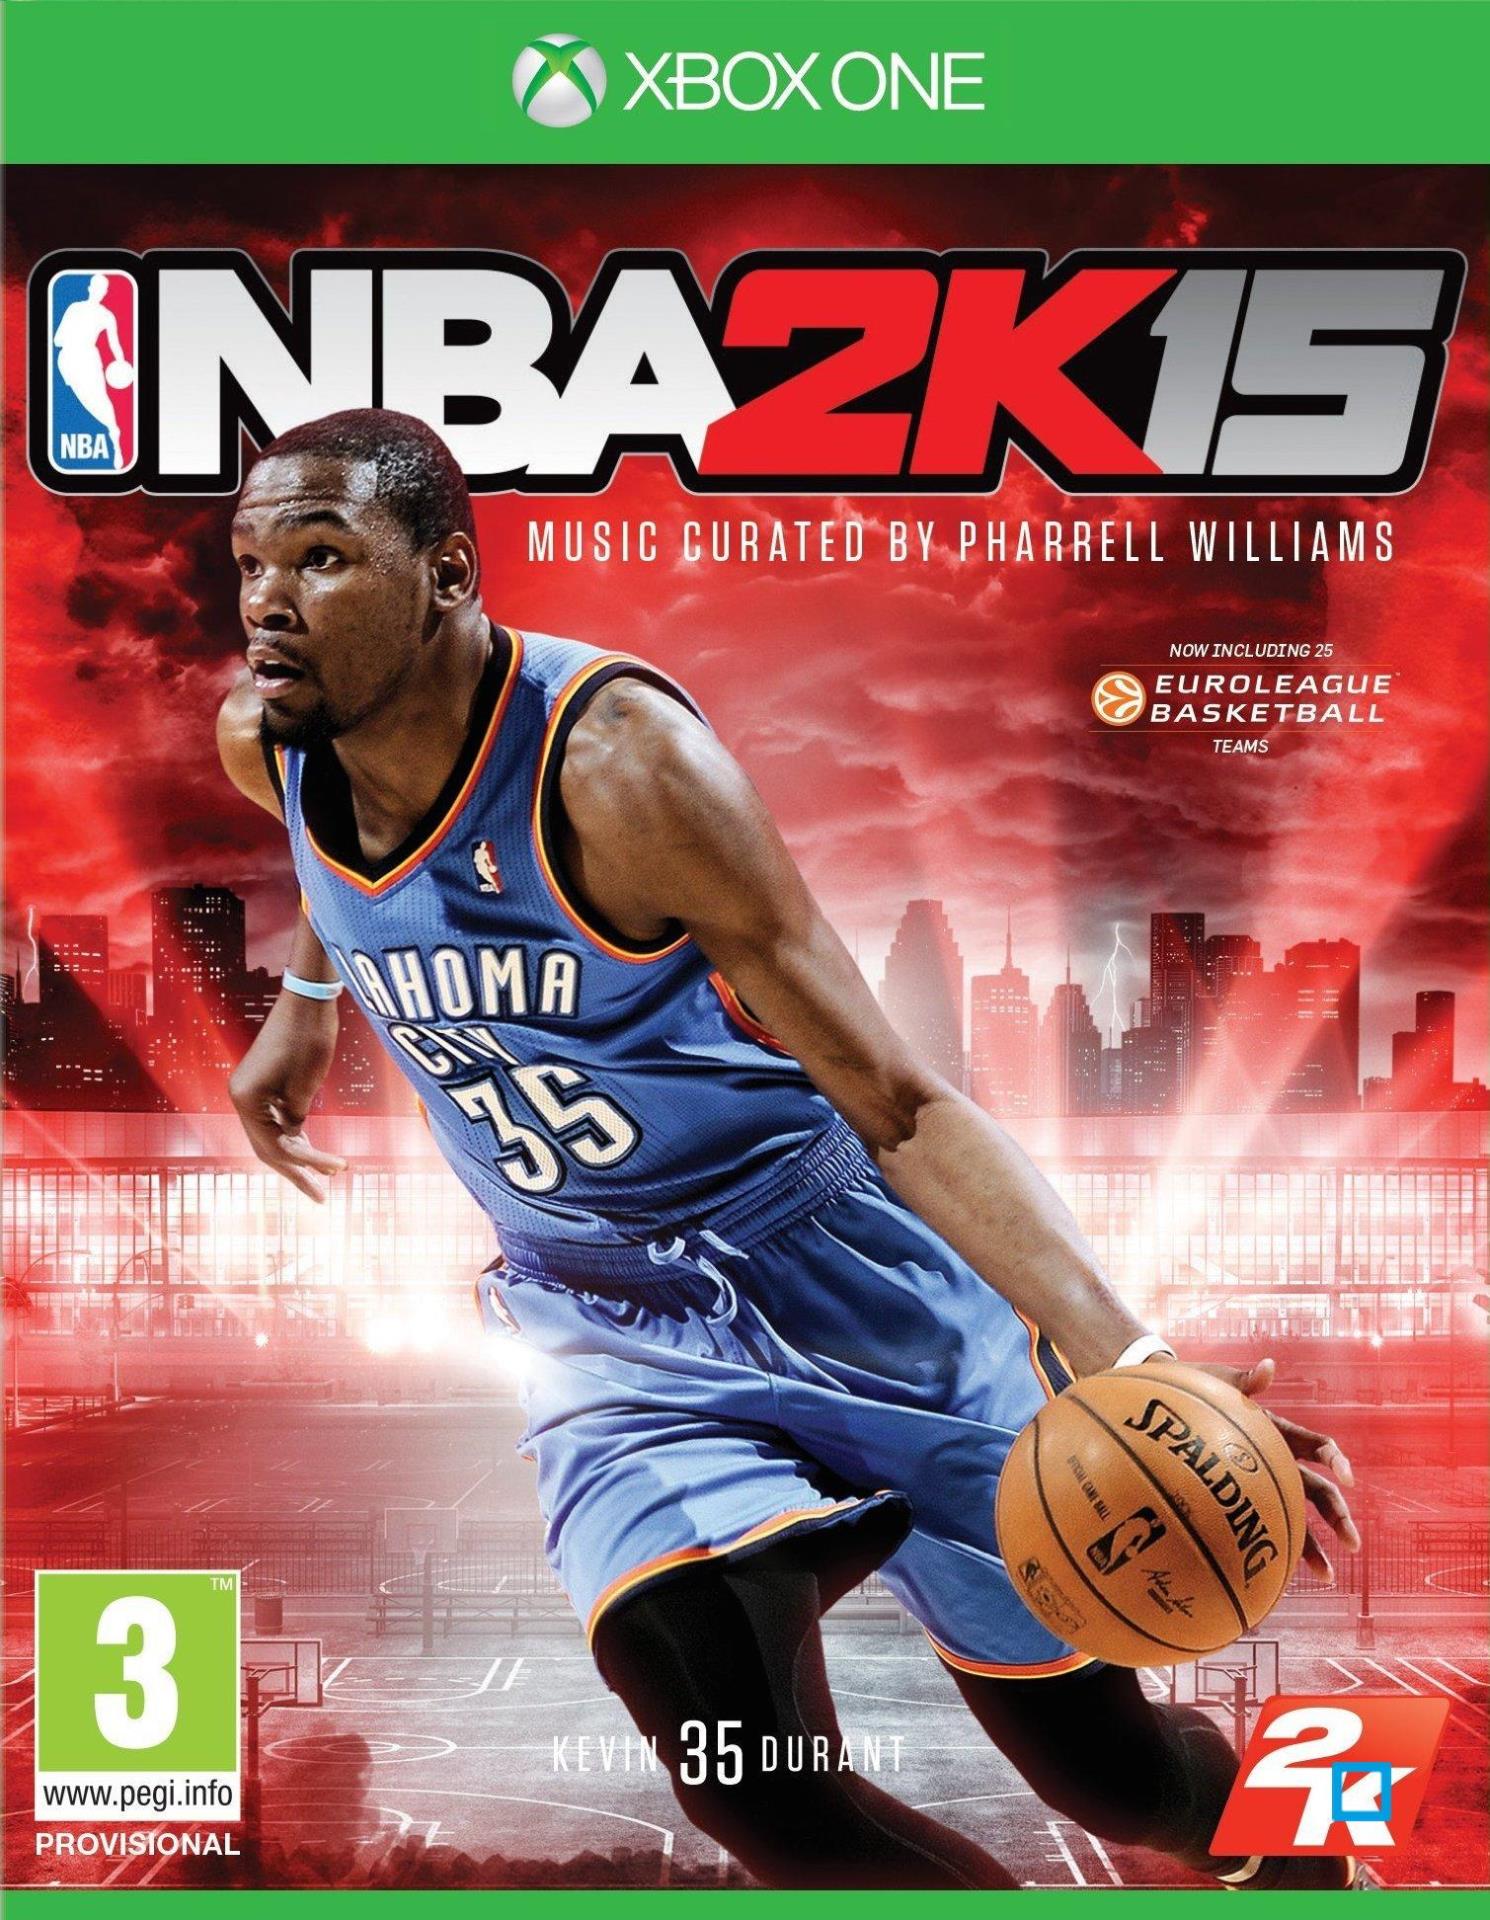 NBA 2k15 Kevin Durant MVP Bonus Pack Edition